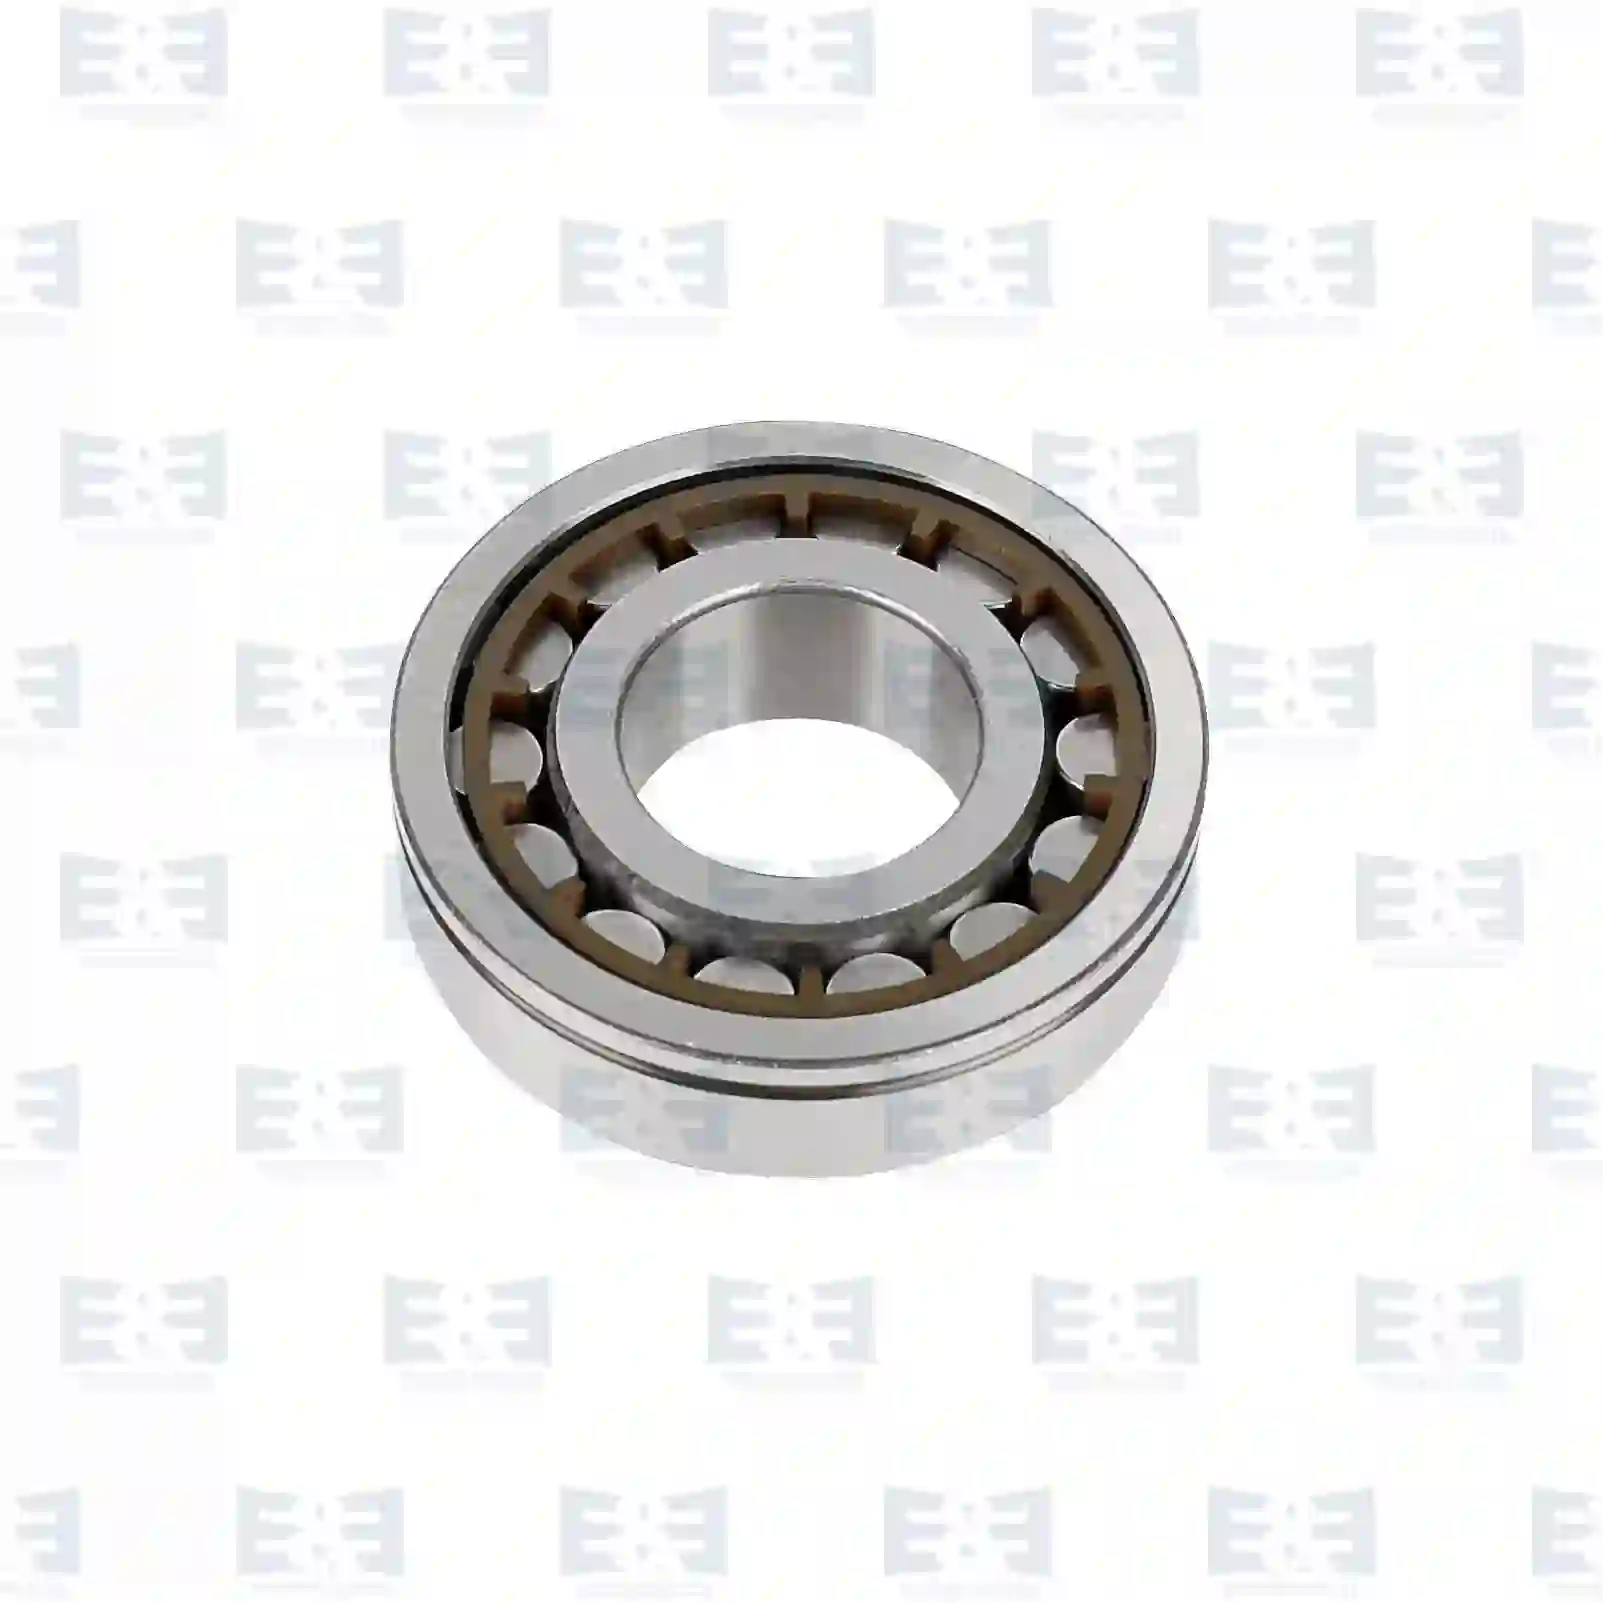 Cylinder roller bearing, 2E2270363, 0009818601, 0009819601, 0019814501, 0029817901, 0029818201, 0029819201, 0029819501, 3459817301 ||  2E2270363 E&E Truck Spare Parts | Truck Spare Parts, Auotomotive Spare Parts Cylinder roller bearing, 2E2270363, 0009818601, 0009819601, 0019814501, 0029817901, 0029818201, 0029819201, 0029819501, 3459817301 ||  2E2270363 E&E Truck Spare Parts | Truck Spare Parts, Auotomotive Spare Parts